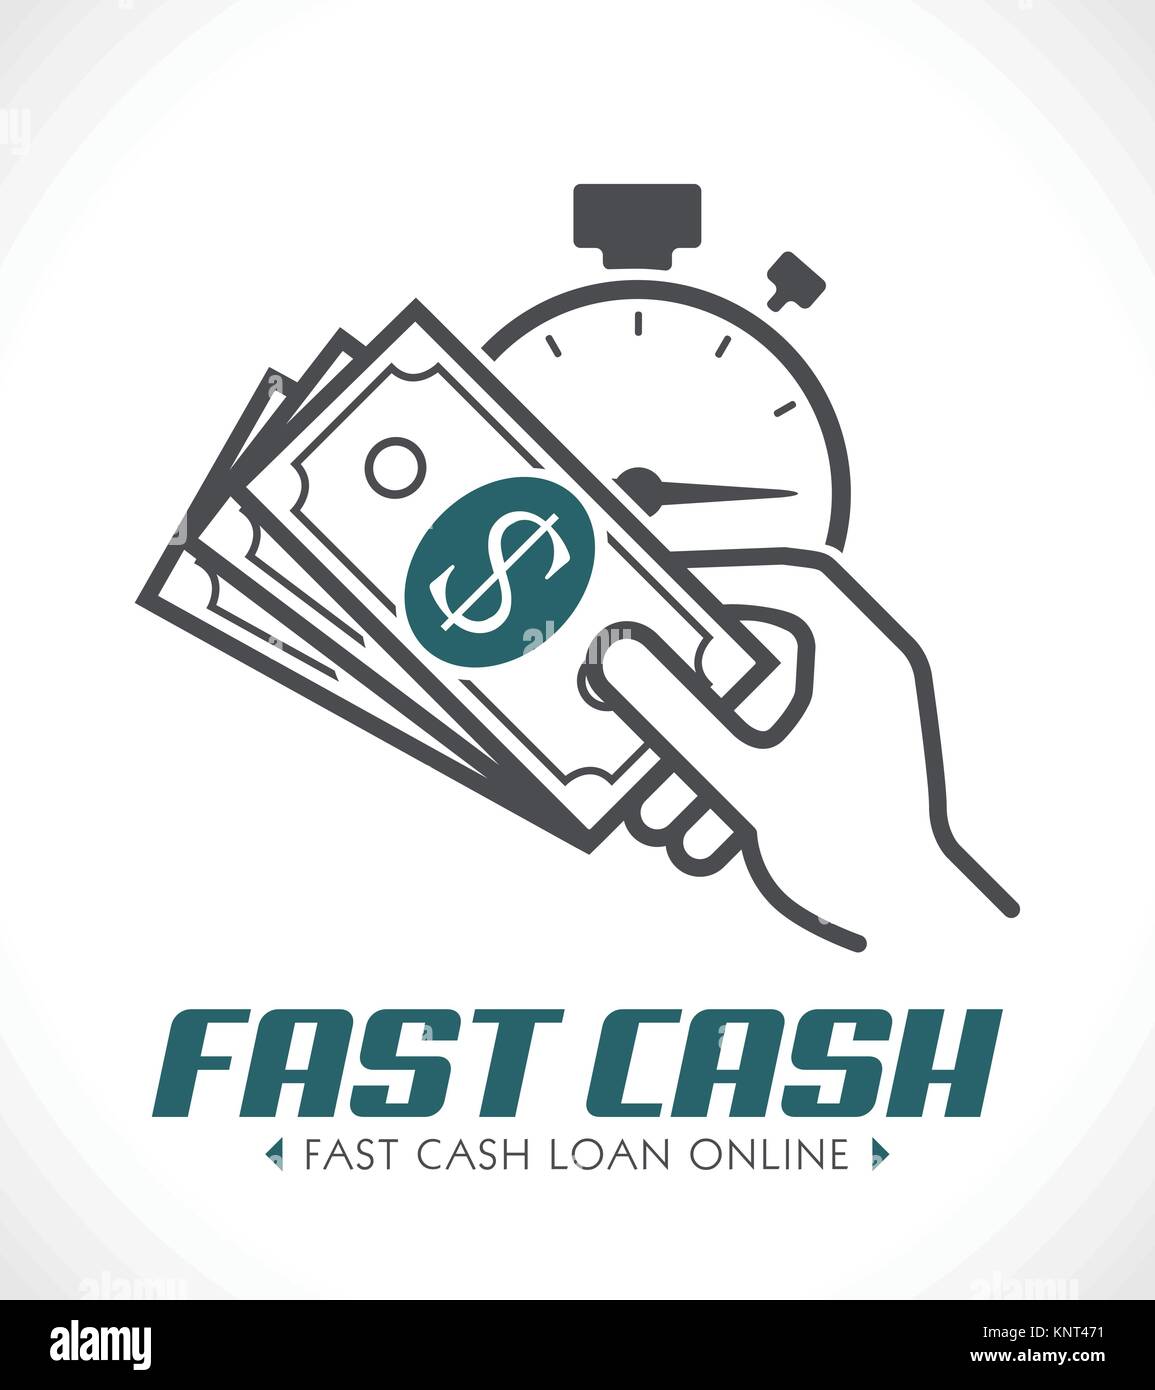 Sex cash Concept - concept de prêt rapide - stock illustration Image  Vectorielle Stock - Alamy